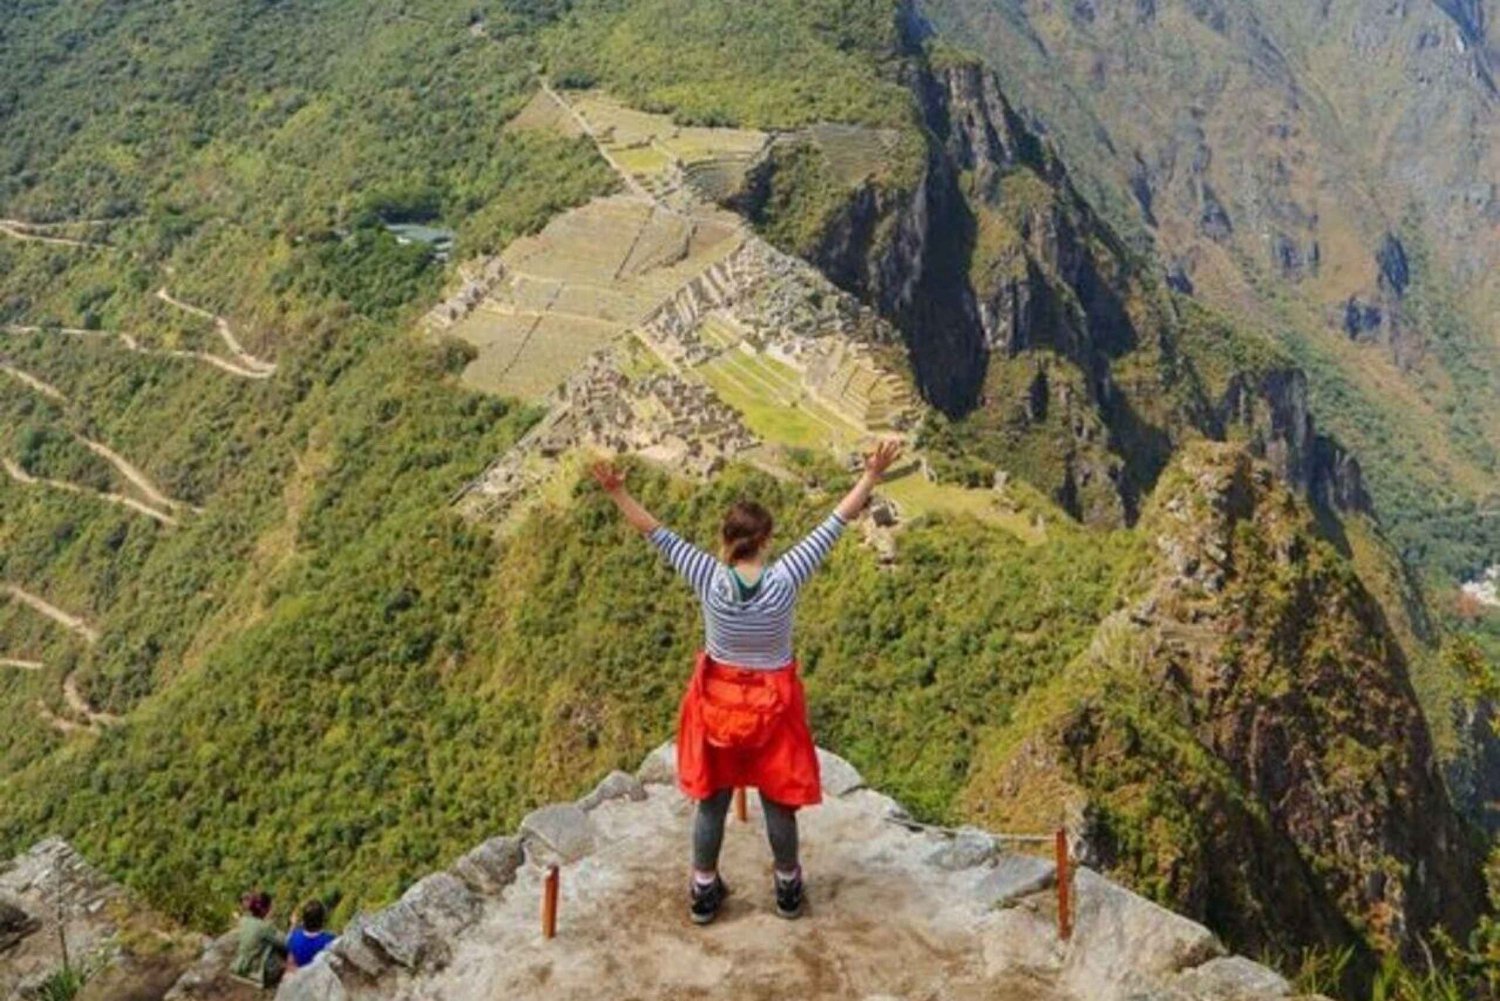 Machu Picchu i wspinaczka na Huayna Picchu: Bilet wstępu